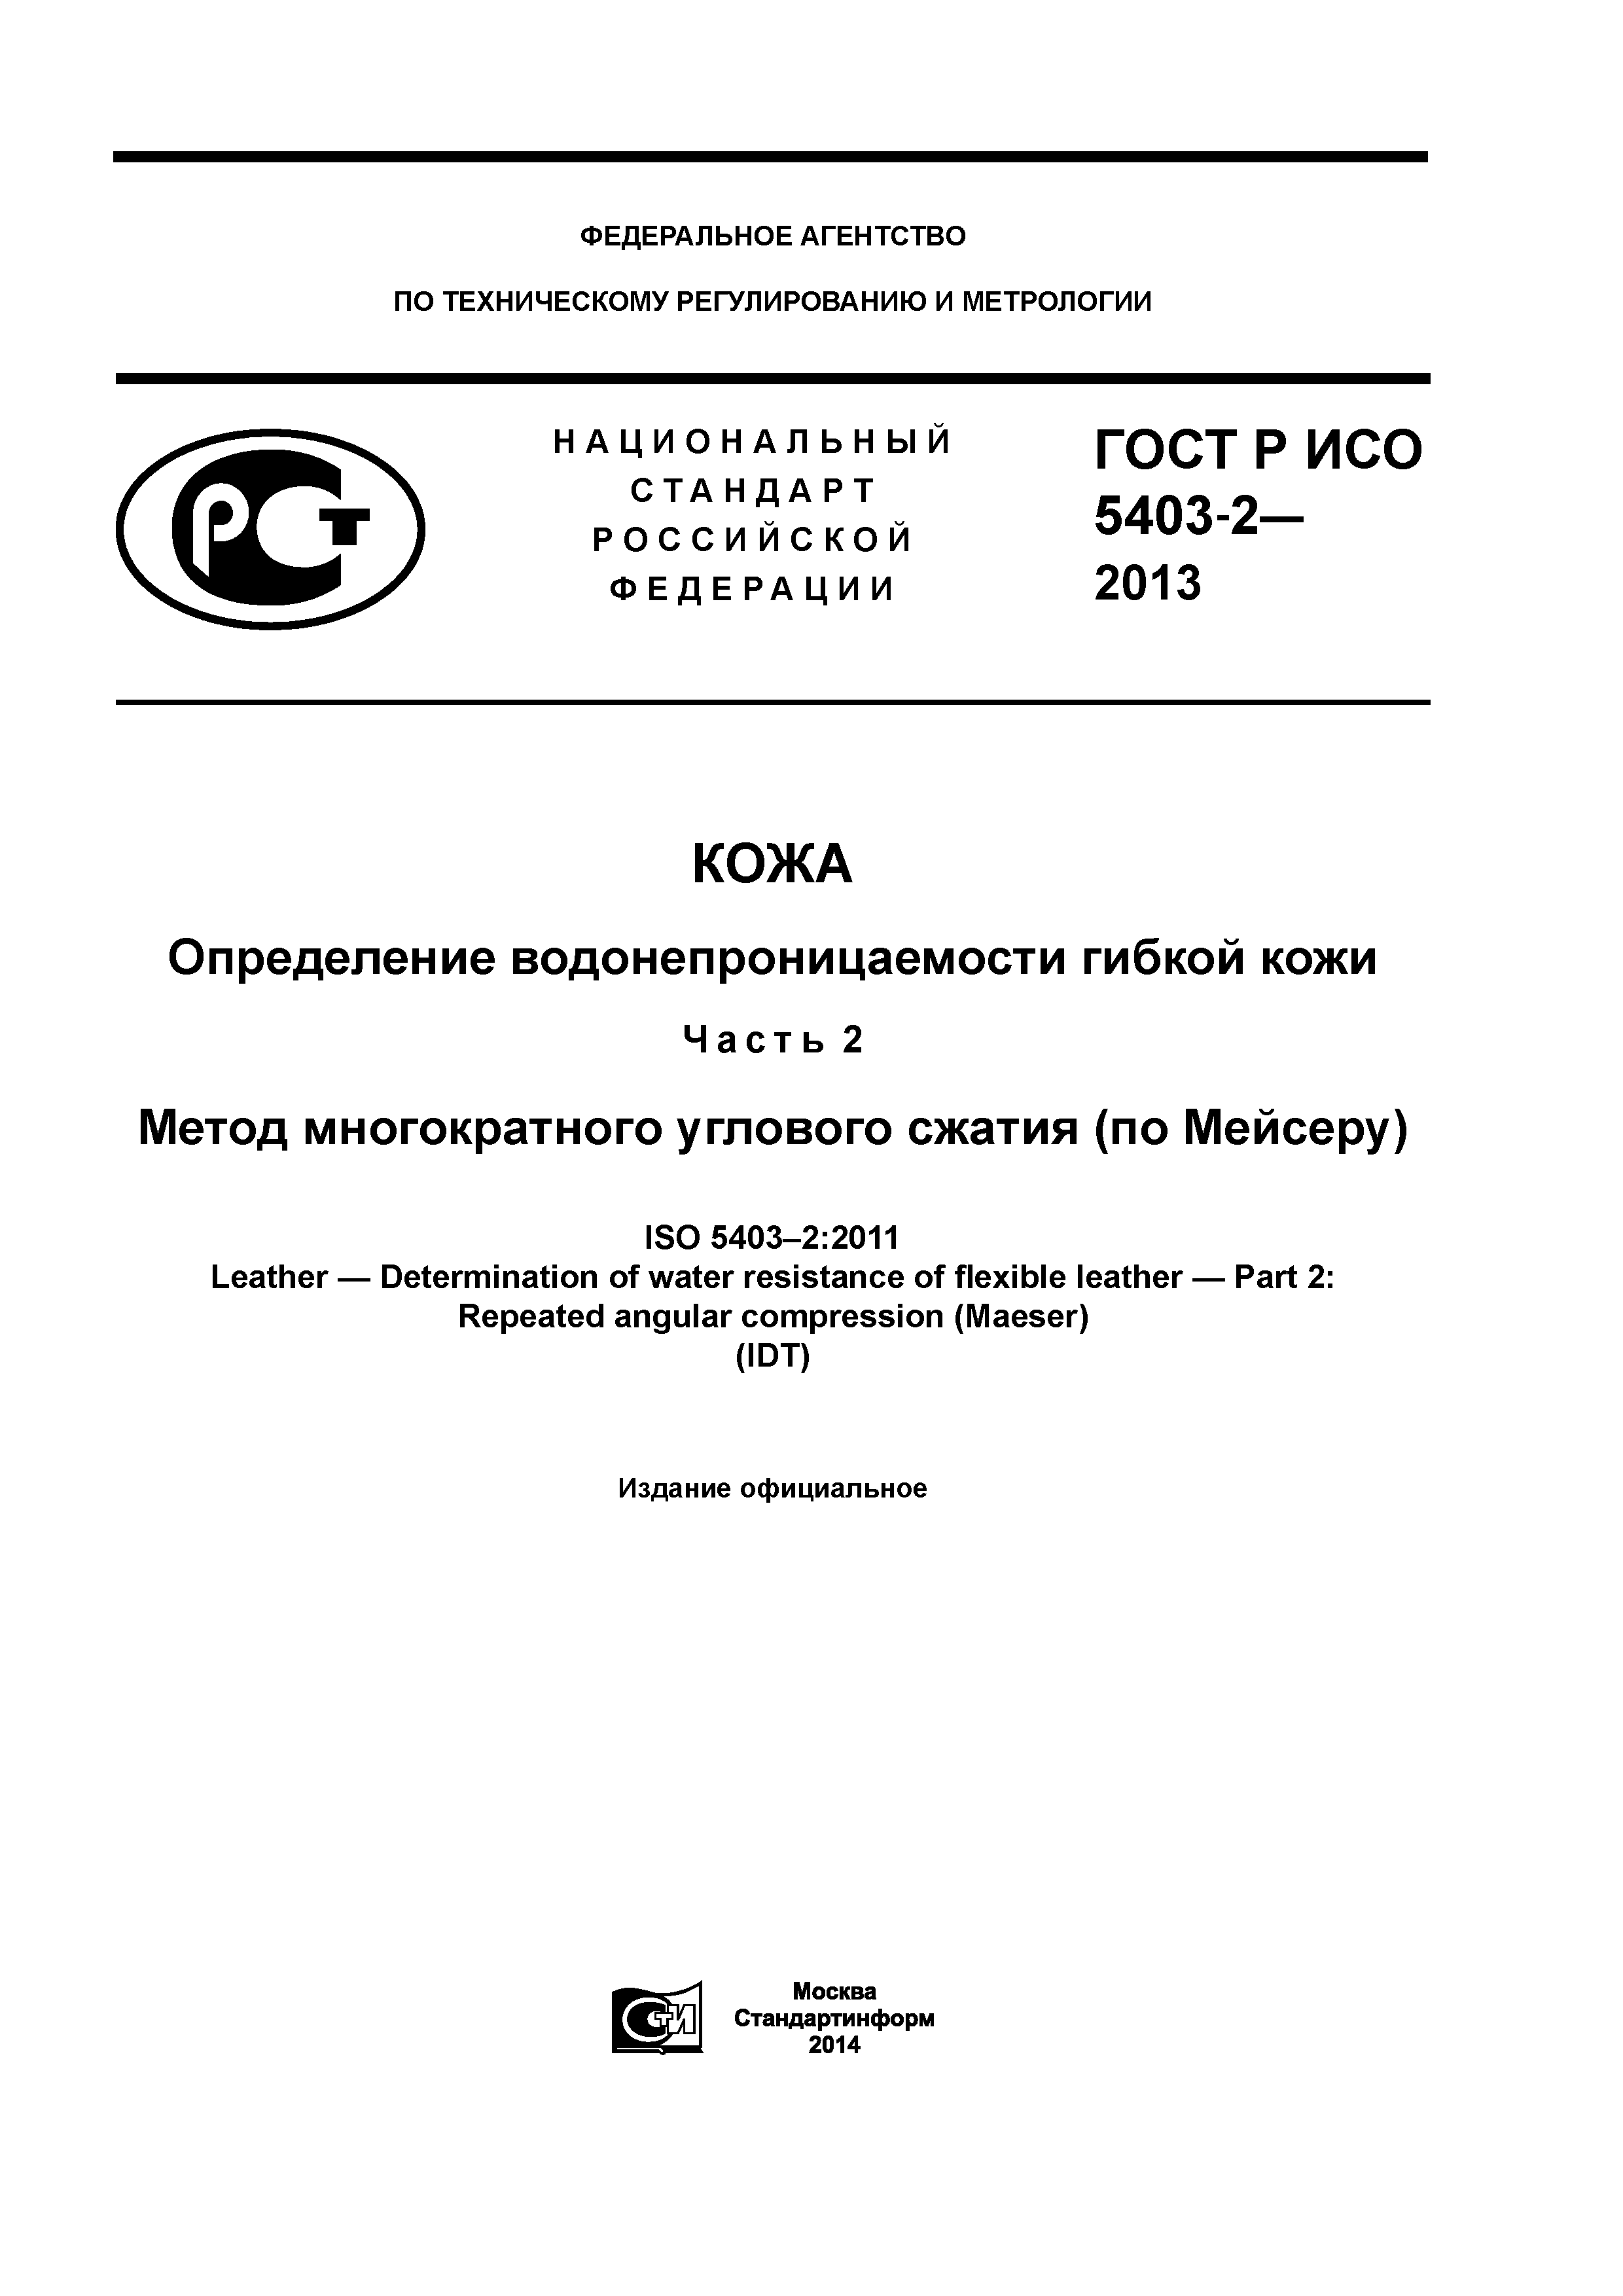 ГОСТ Р ИСО 5403-2-2013